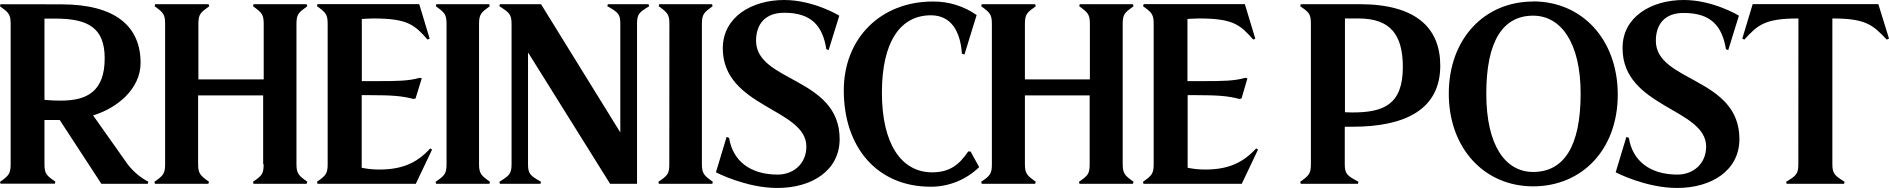 Rheinische Post Logo